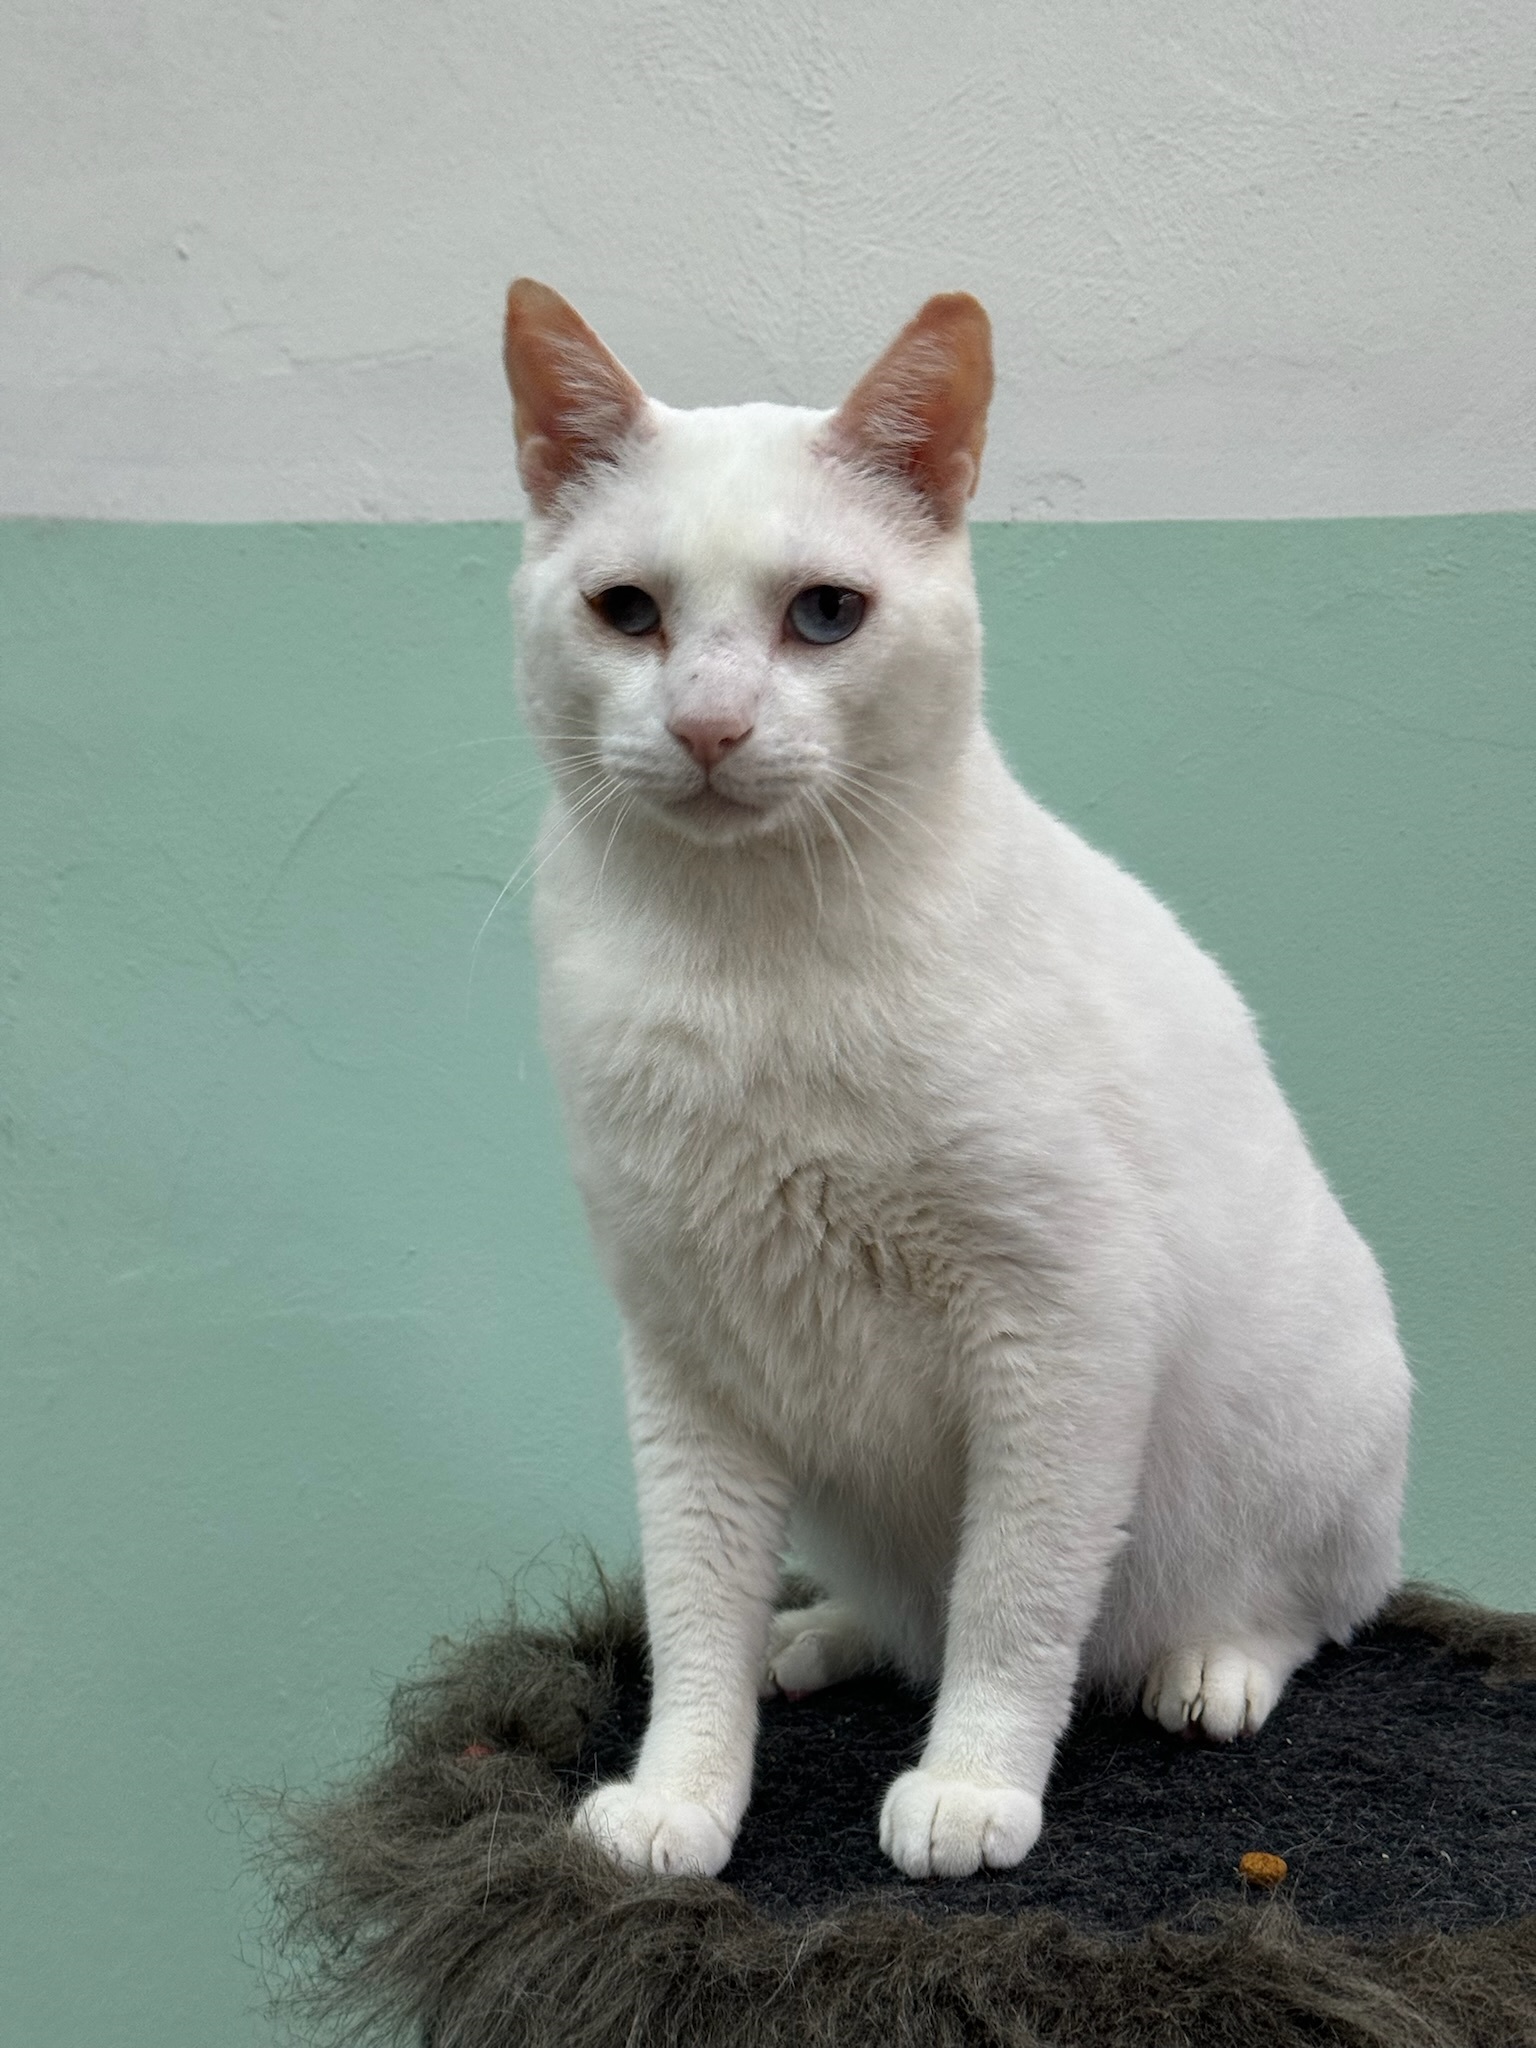 #PraCegoVer: Branquinho é um gato com pelagem branca, seus olhos são azuis, ele esta sentado em um objeto felpudo com uma parede metade verde claro metade braco de fundo